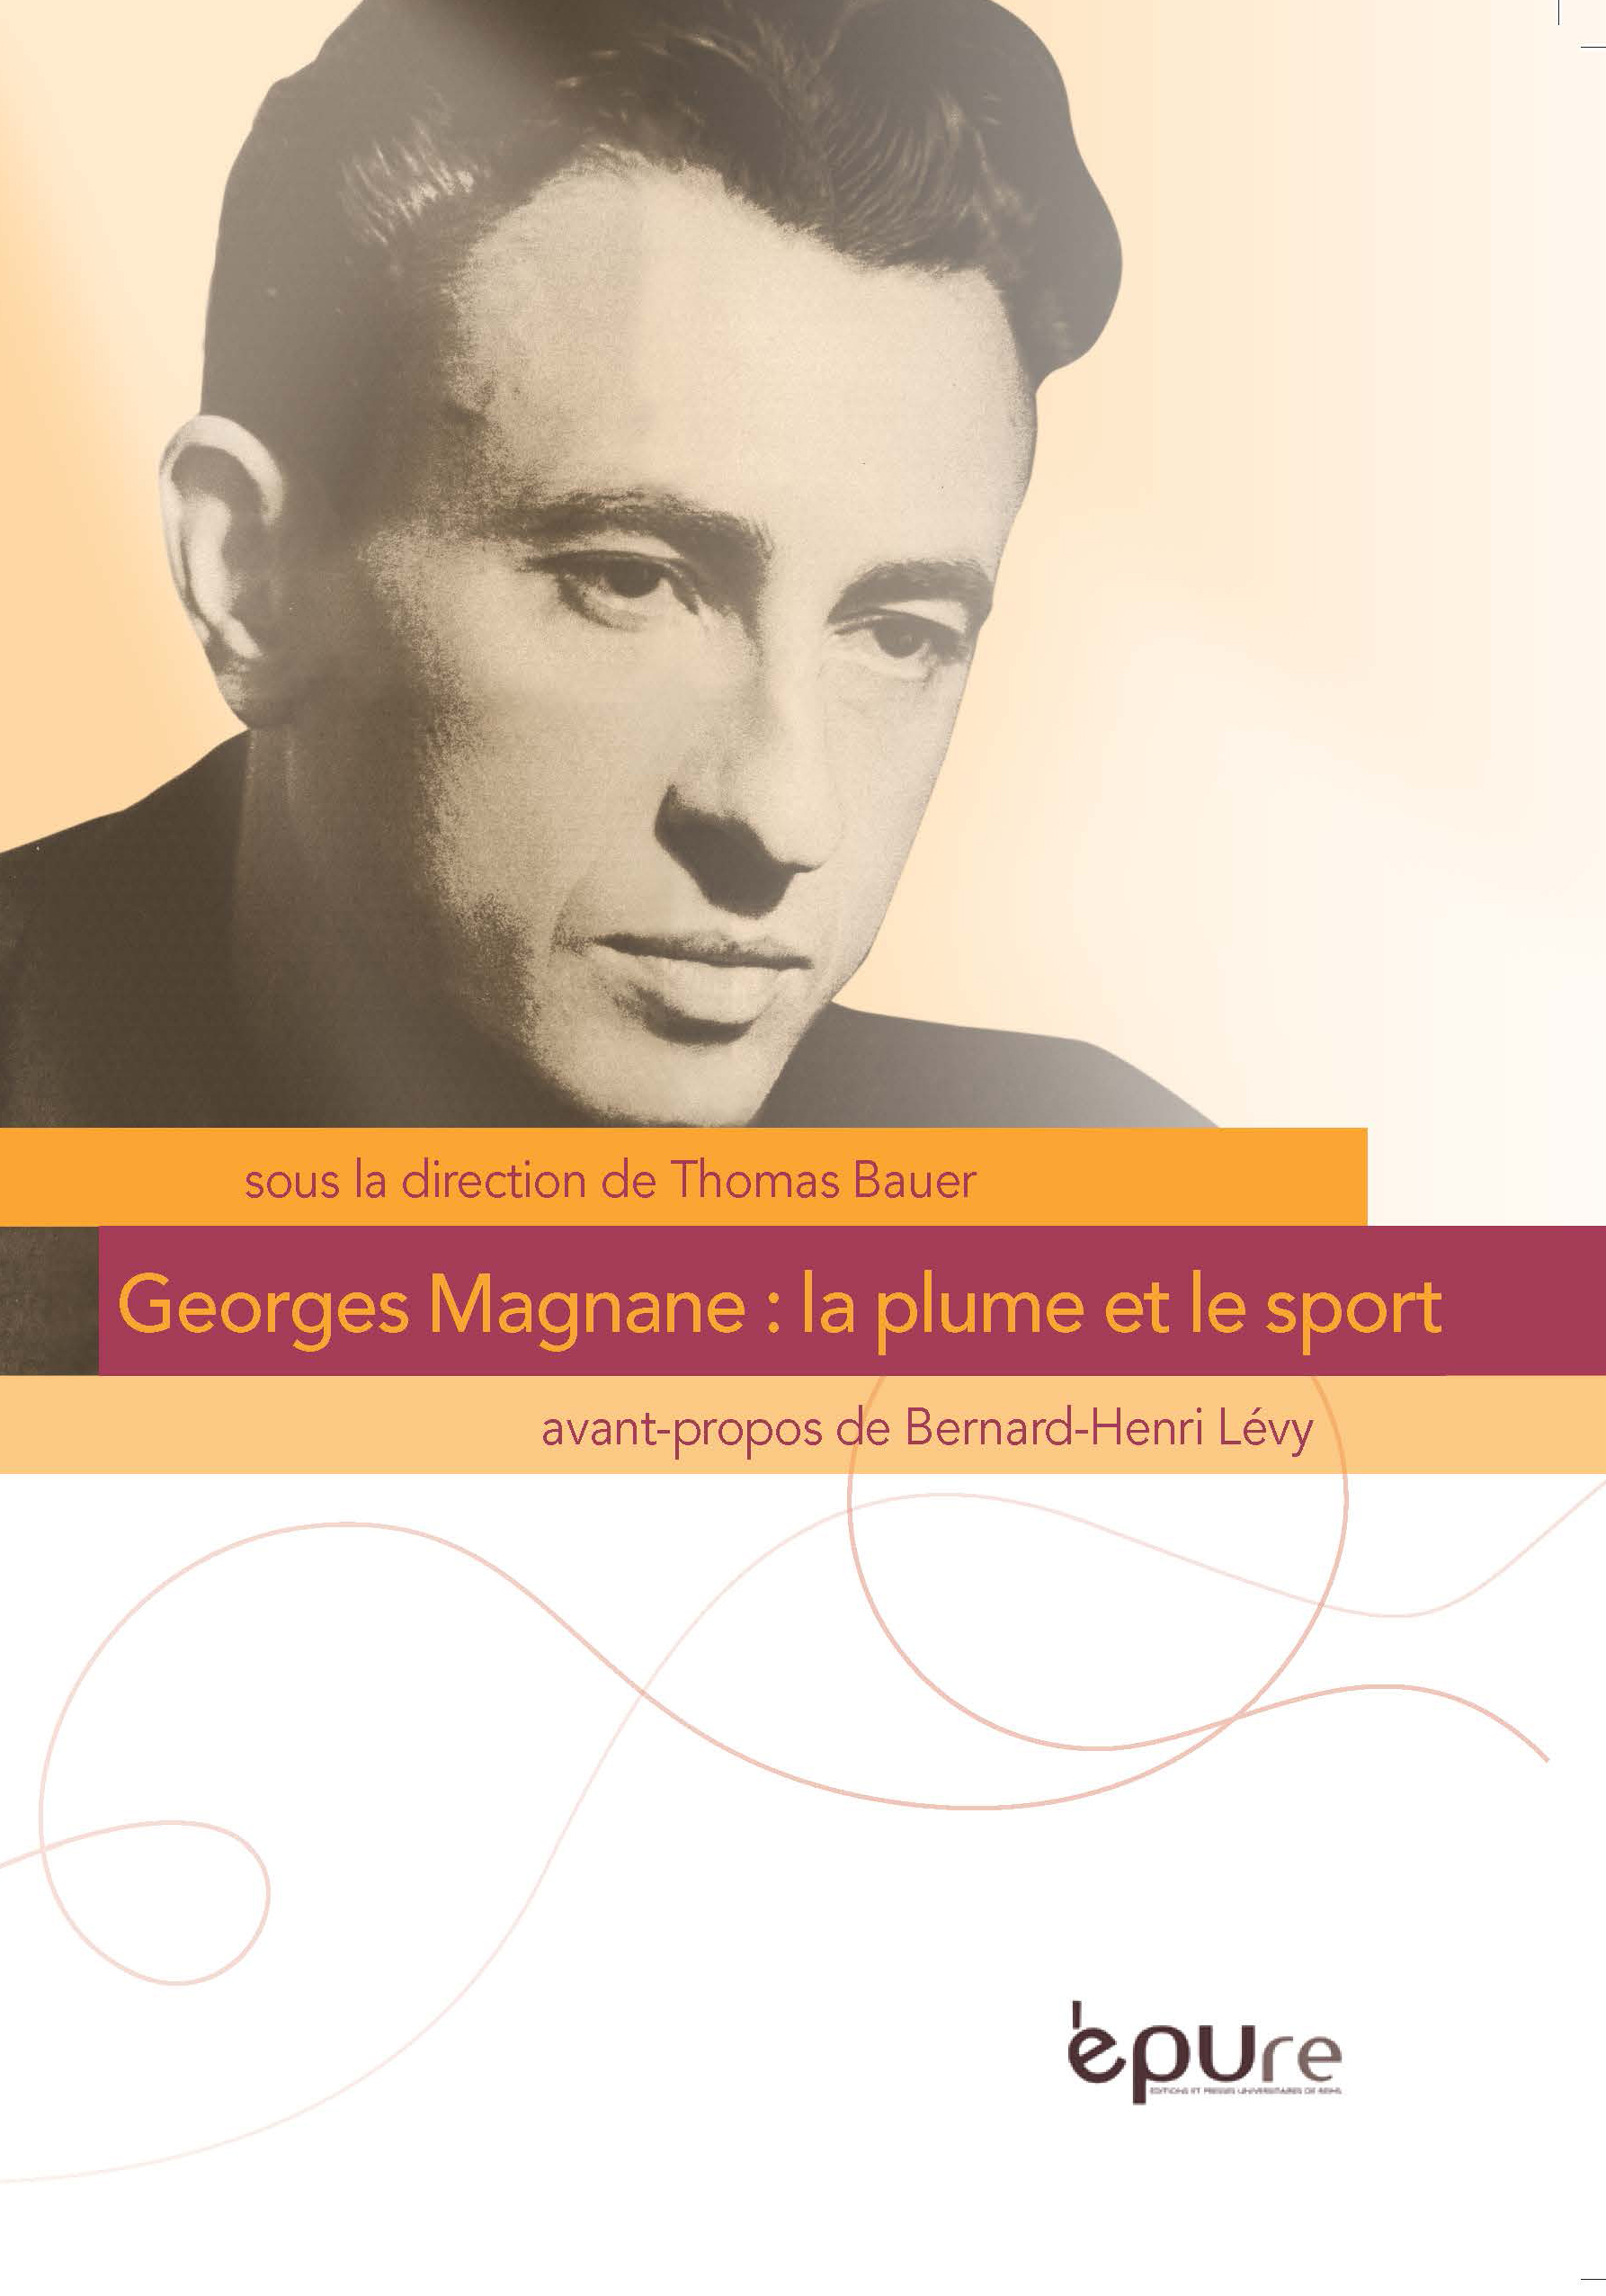 Georges Magnane : la plume et le sport